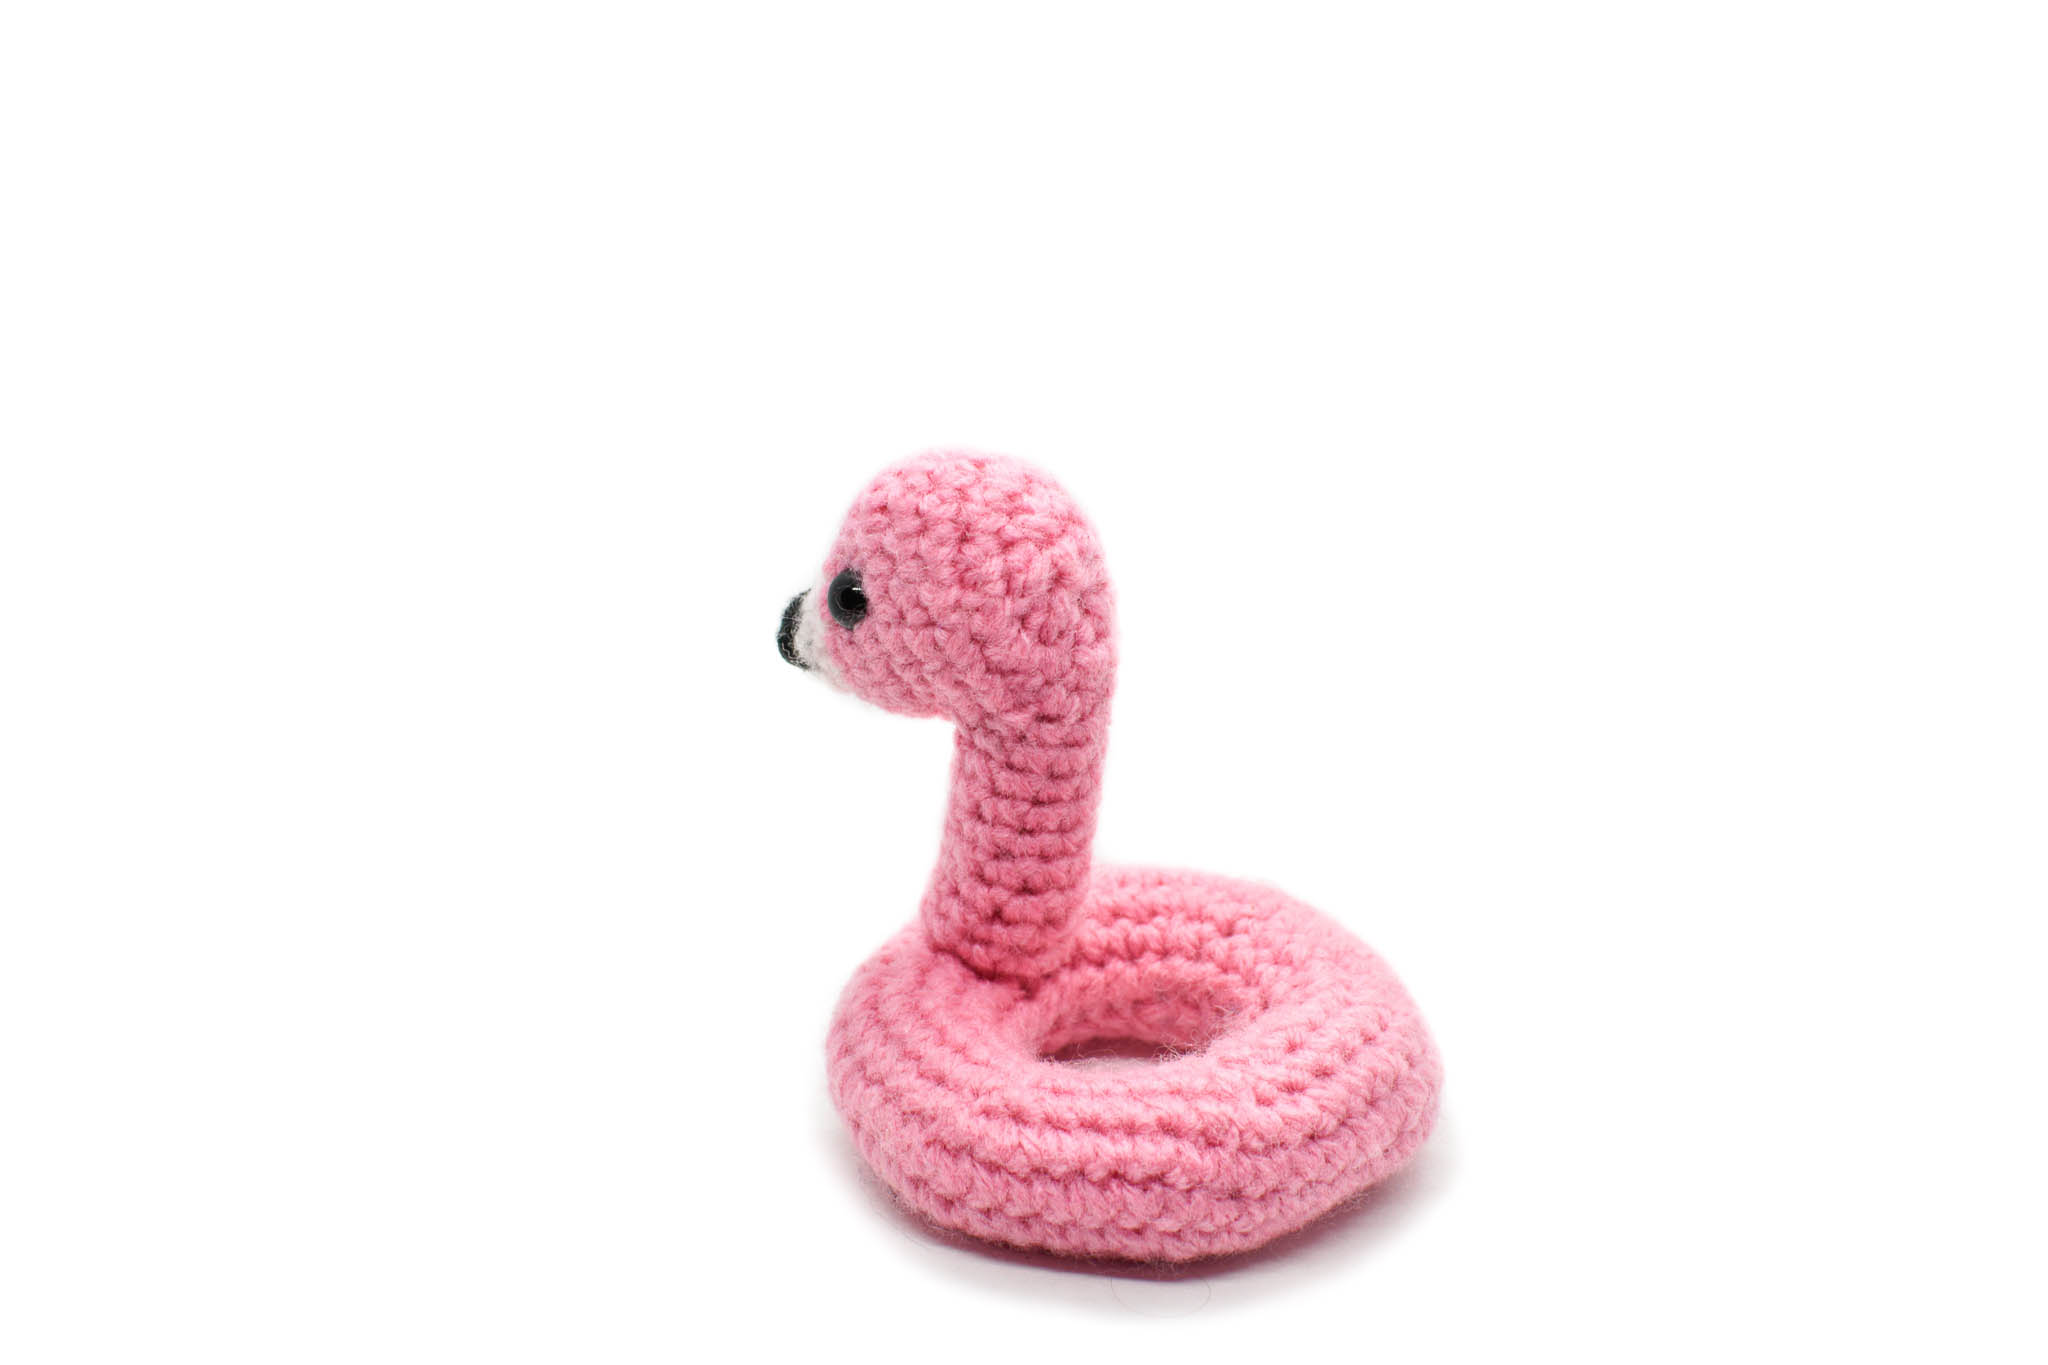 Floatie Crochet Kit